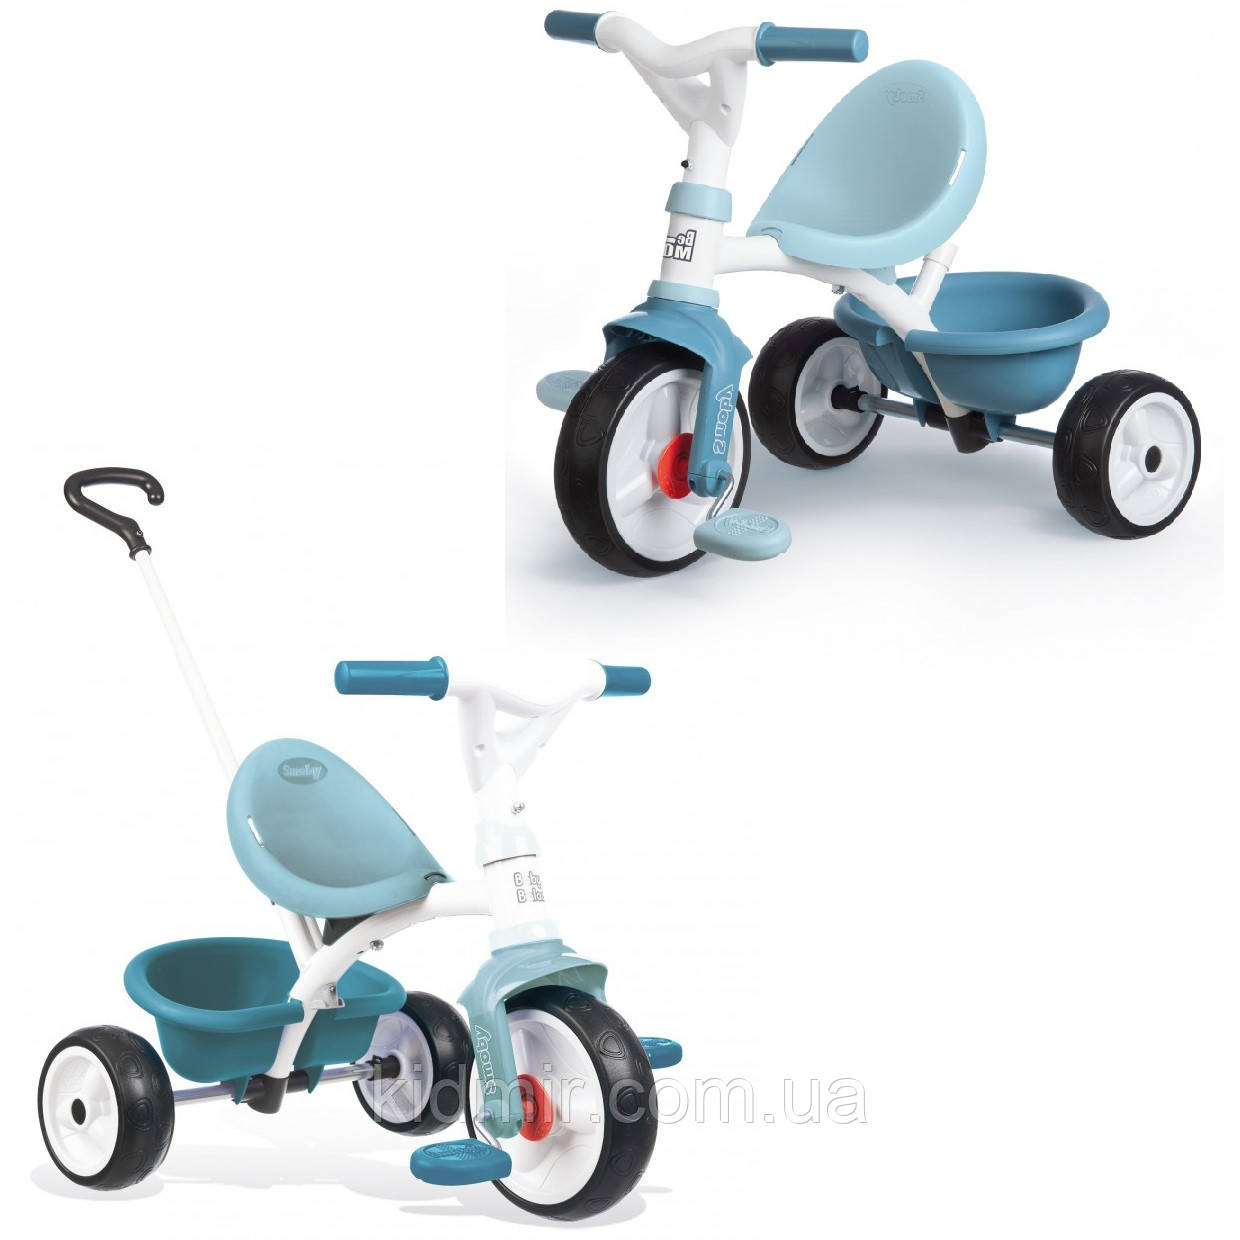 Дитячий триколісний велосипед 2 в 1 Бі Муві блакитний Smoby 740331